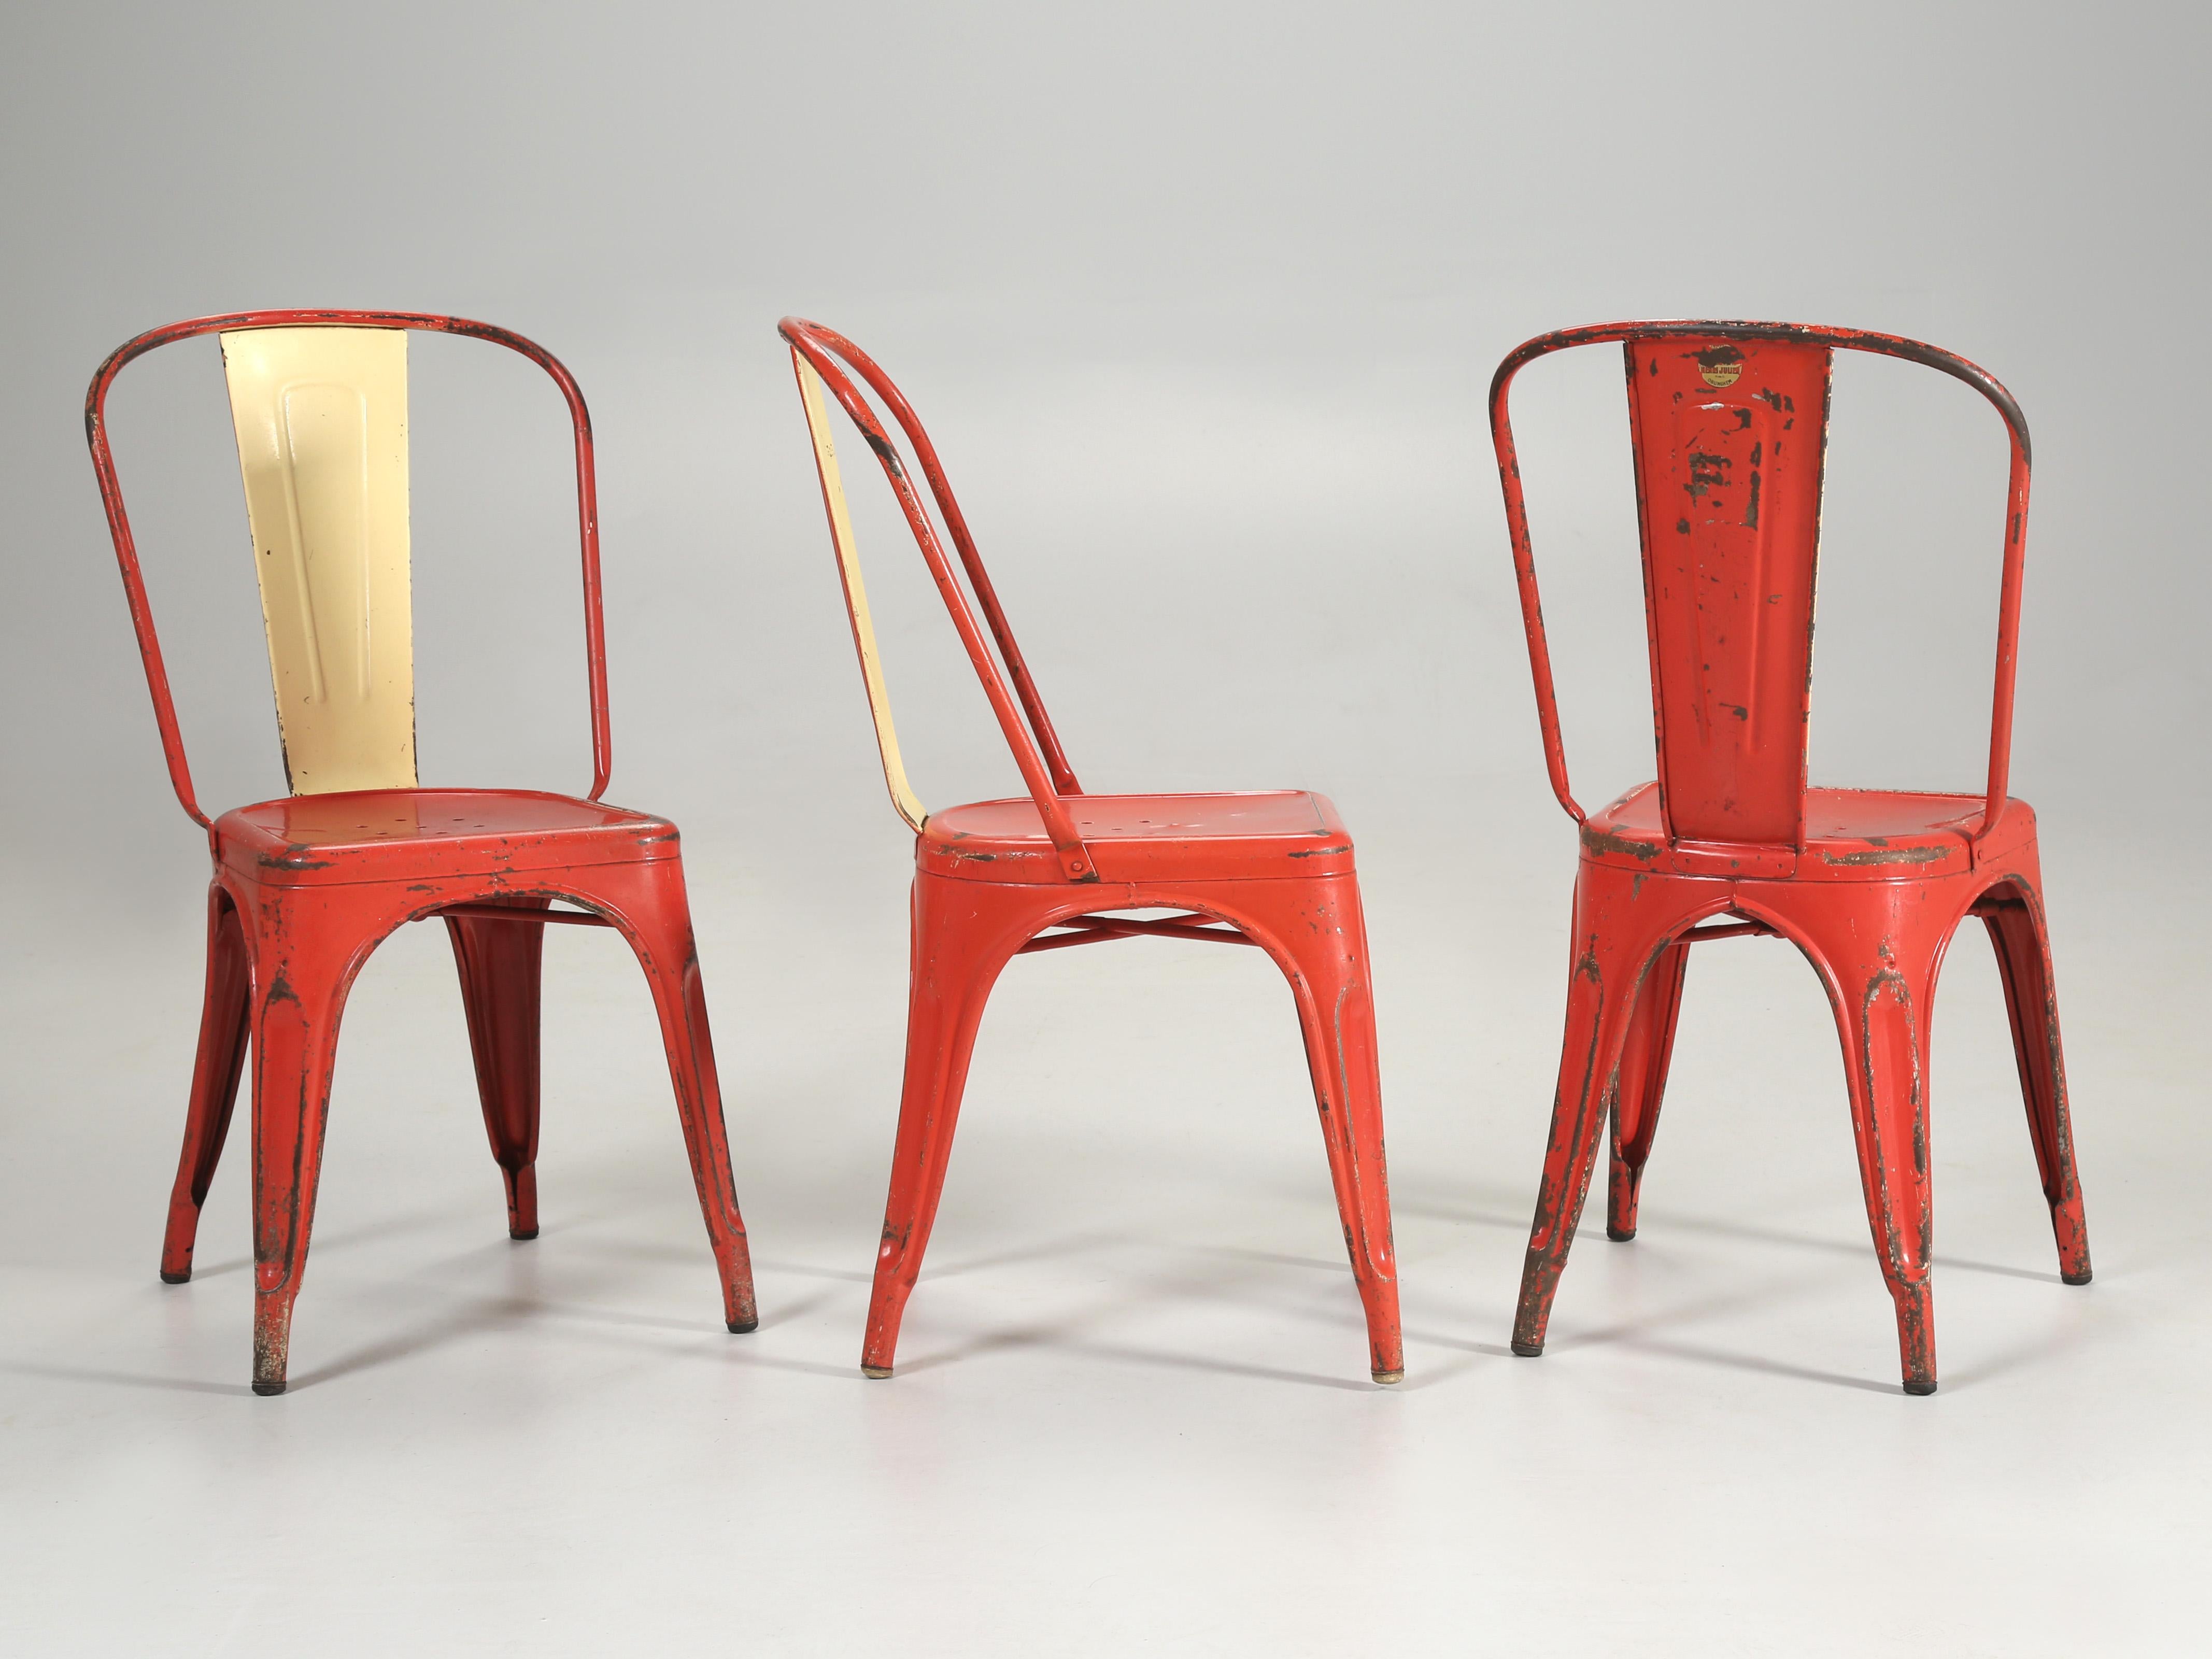 Authentiques chaises Tolix fabriquées à la main et portant le label doré TOLIX. Les chaises Tolix sont considérées comme des icônes et ont été exposées au Musée d'art moderne de New York, au Vitra Design Museum en Allemagne et au Centre Pompidou à